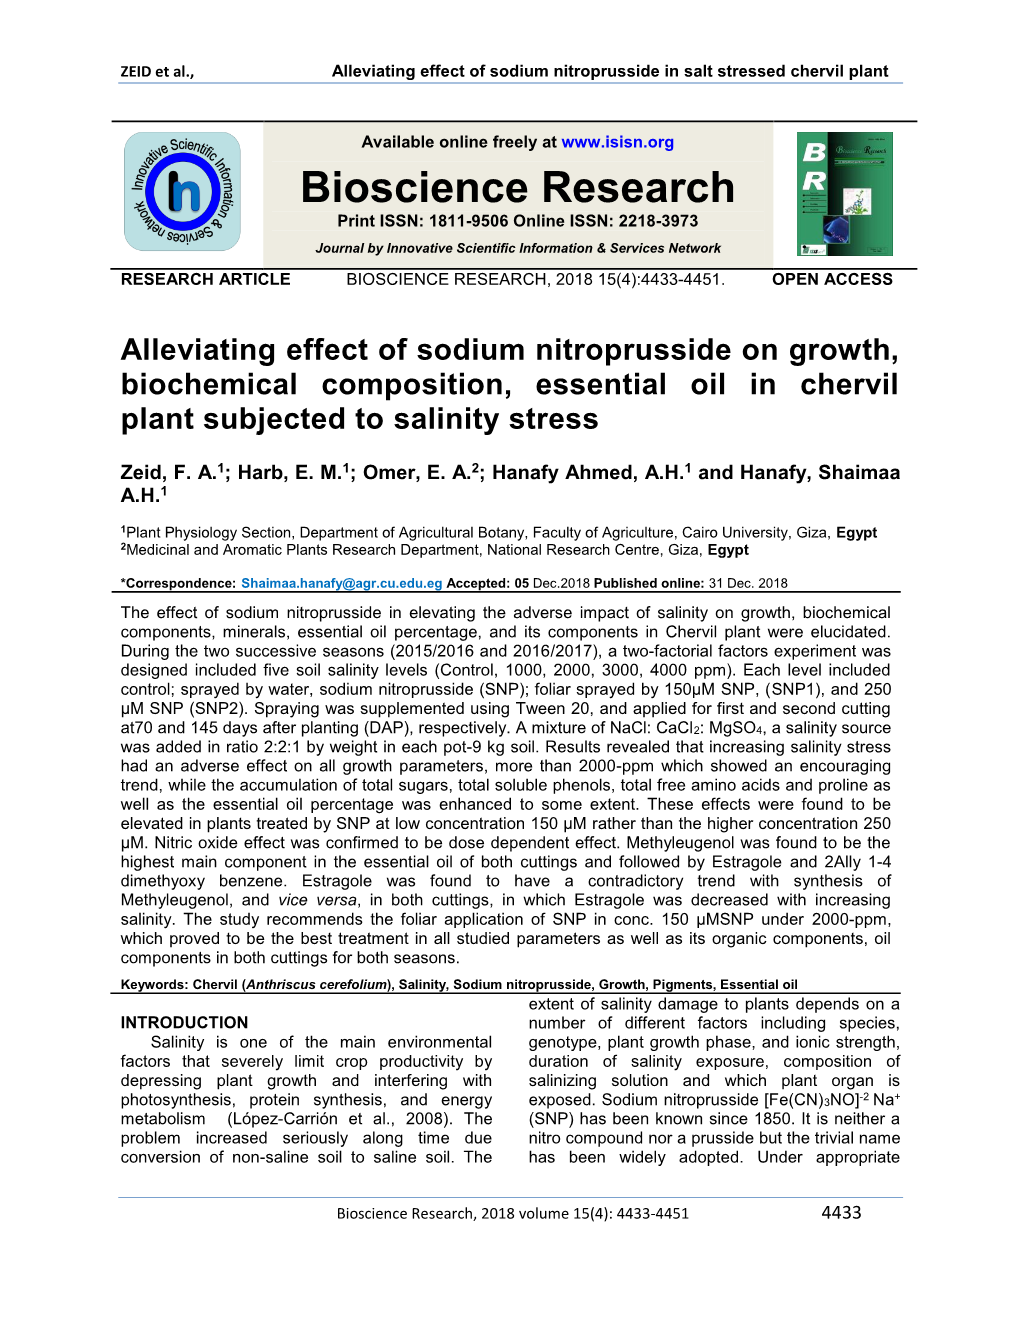 ZEID Et Al., Alleviating Effect of Sodium Nitroprusside in Salt Stressed Chervil Plant